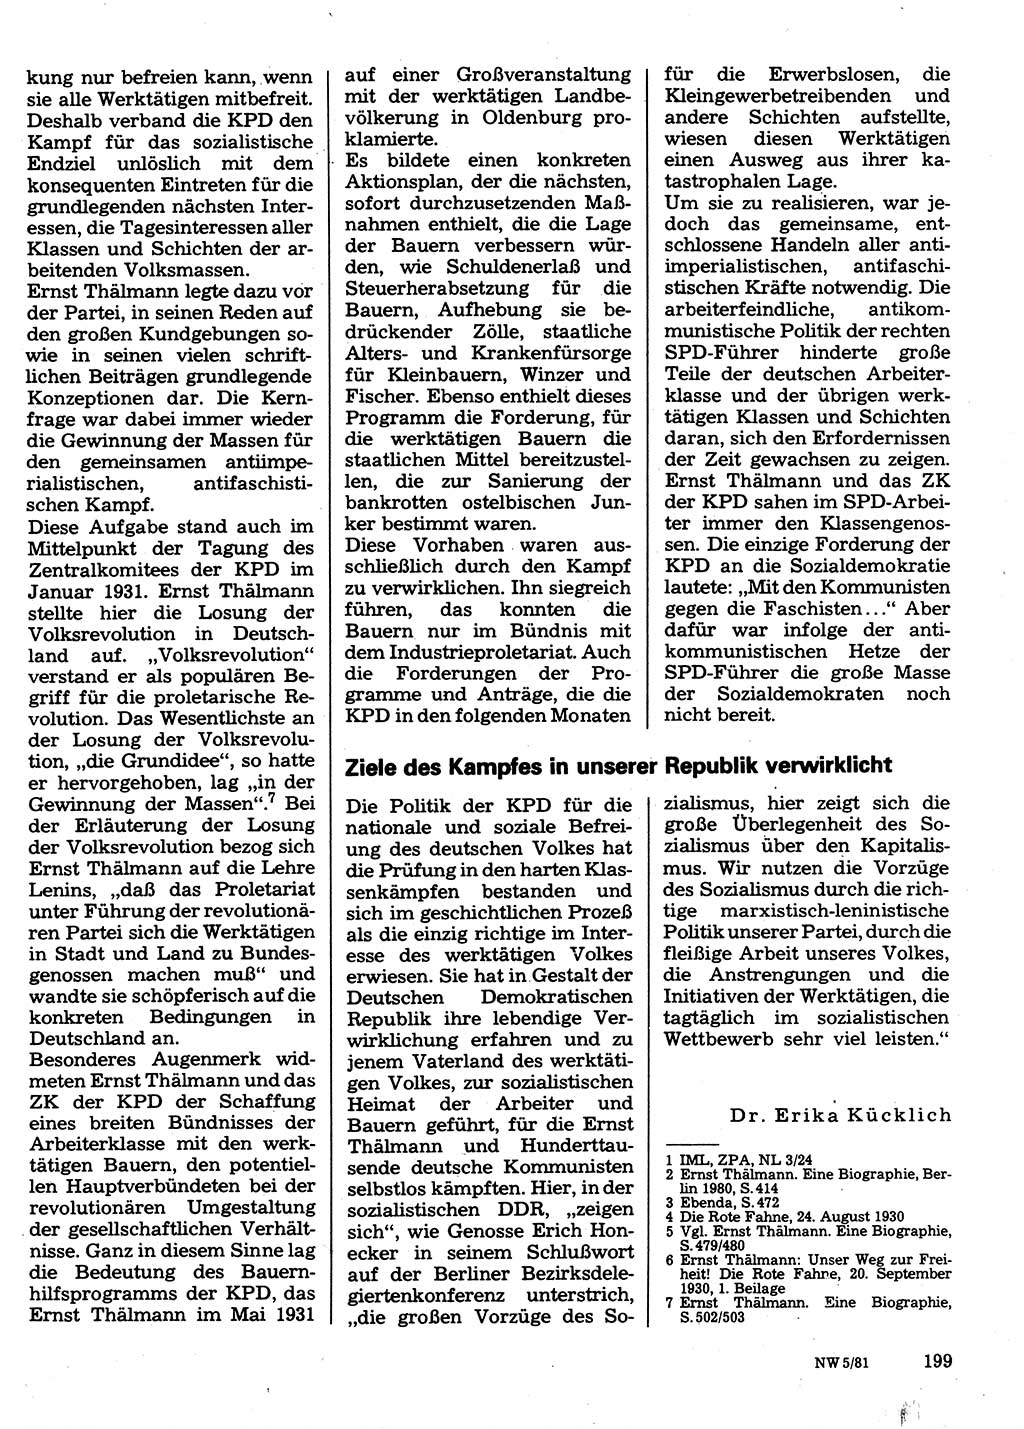 Neuer Weg (NW), Organ des Zentralkomitees (ZK) der SED (Sozialistische Einheitspartei Deutschlands) für Fragen des Parteilebens, 36. Jahrgang [Deutsche Demokratische Republik (DDR)] 1981, Seite 199 (NW ZK SED DDR 1981, S. 199)